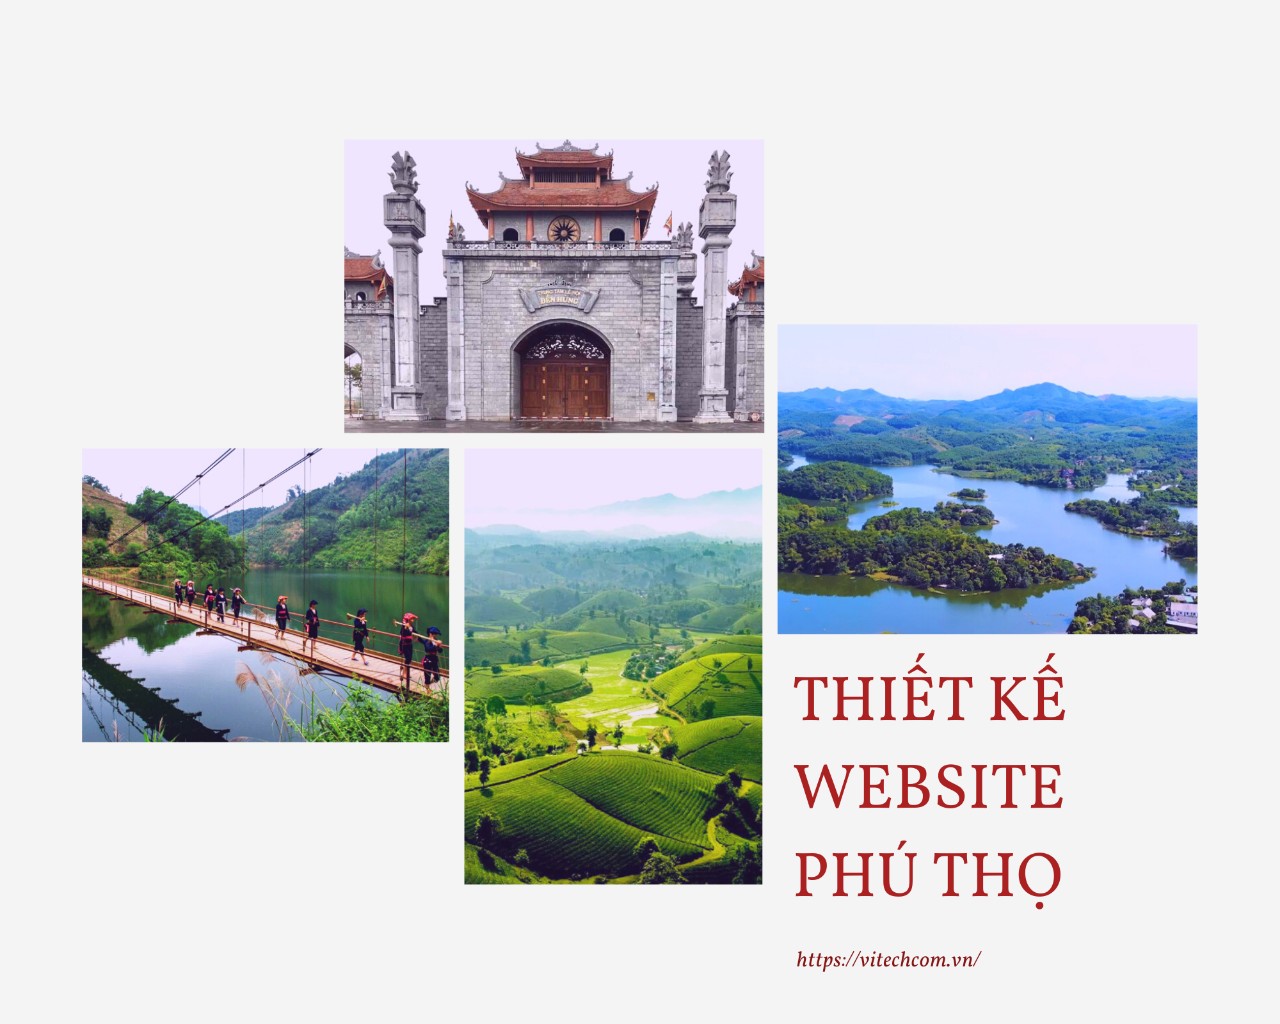 Thiết kế website Phú Thọ